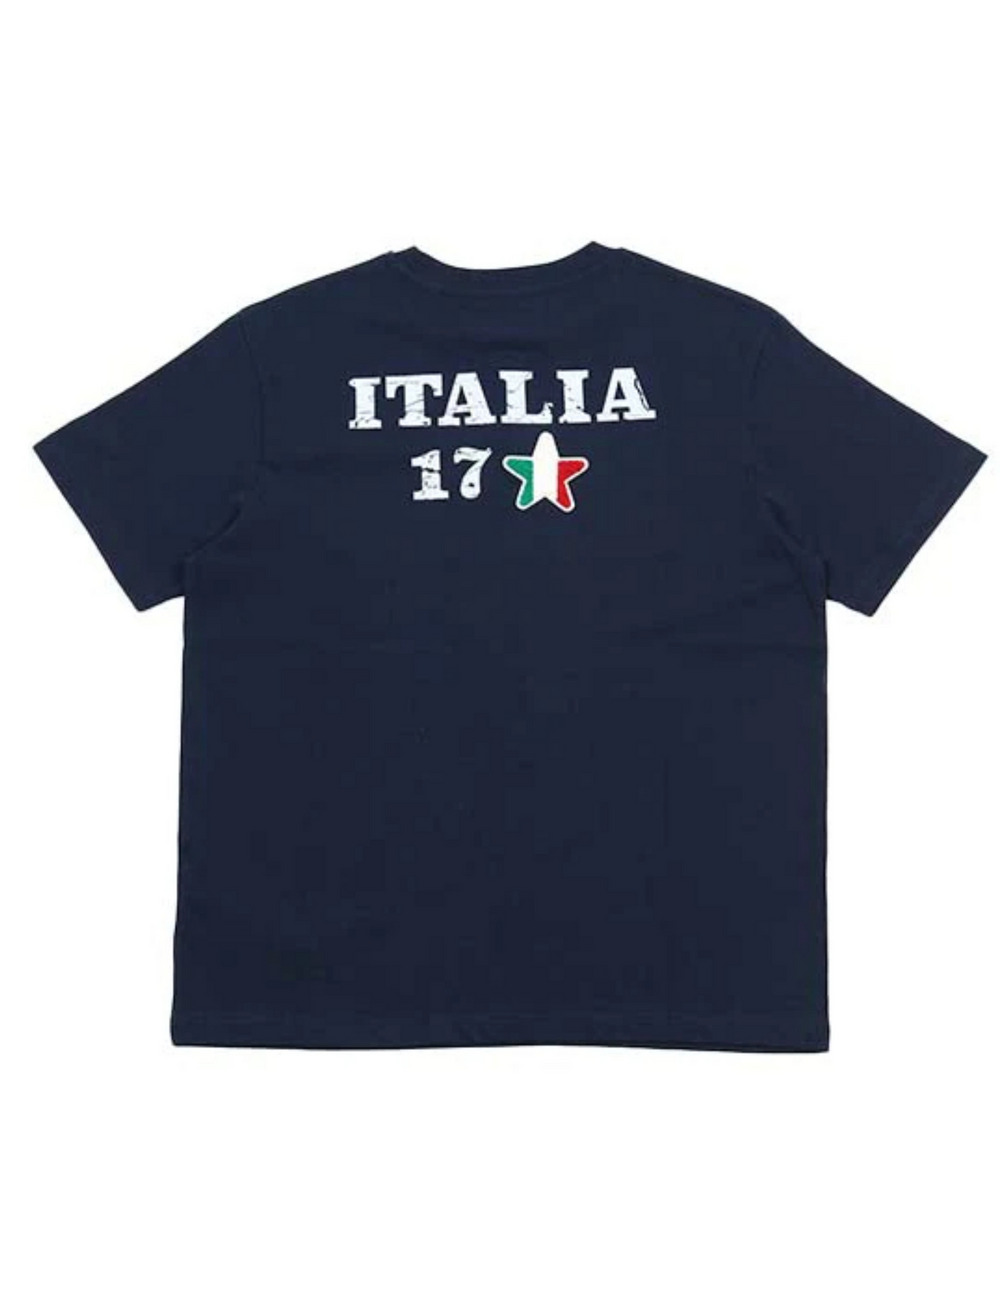 イタリア17Tシャツ(半袖) / ITALIA 17 T SHIRT 詳細画像 ネイビー 2